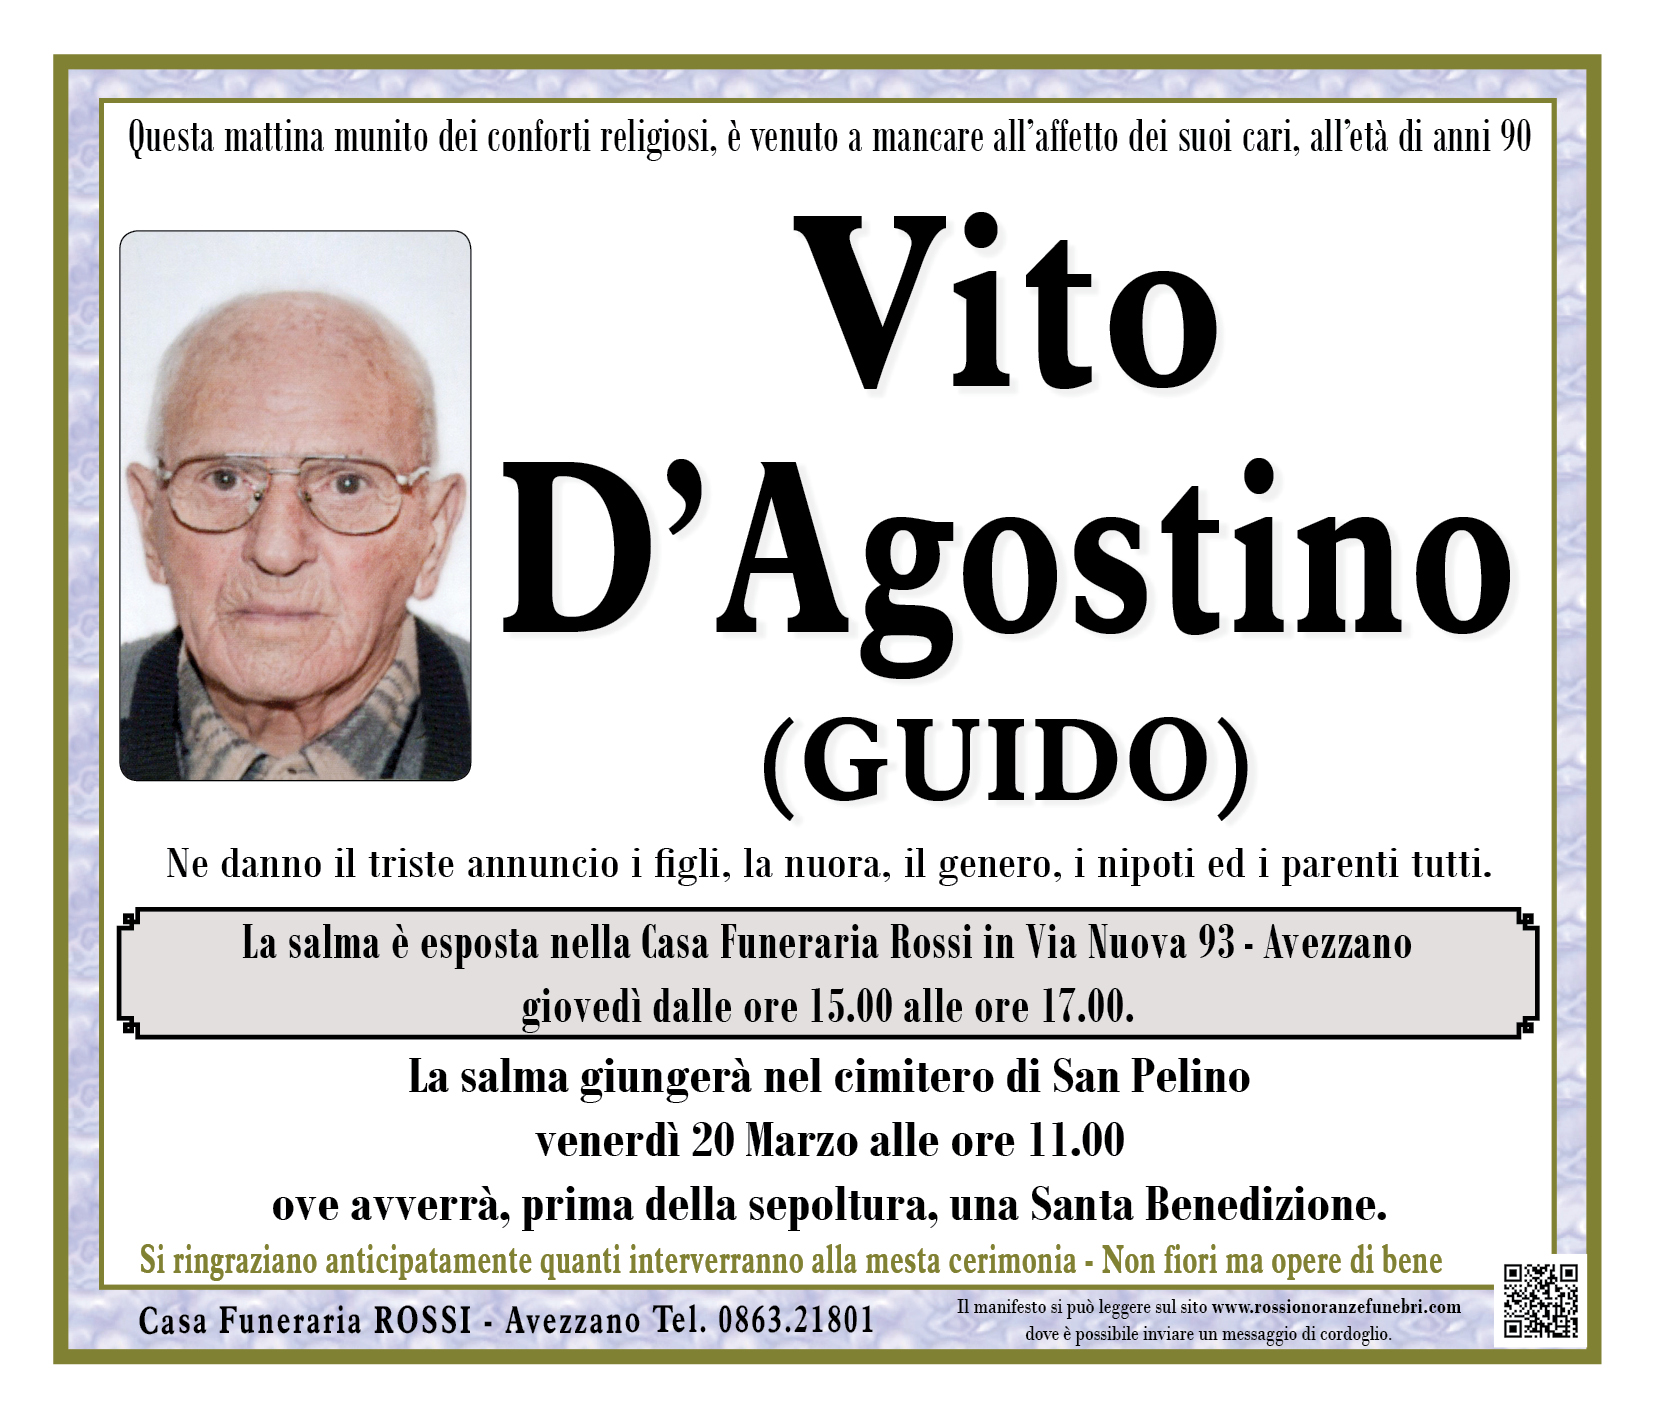 Vito D'Agostino